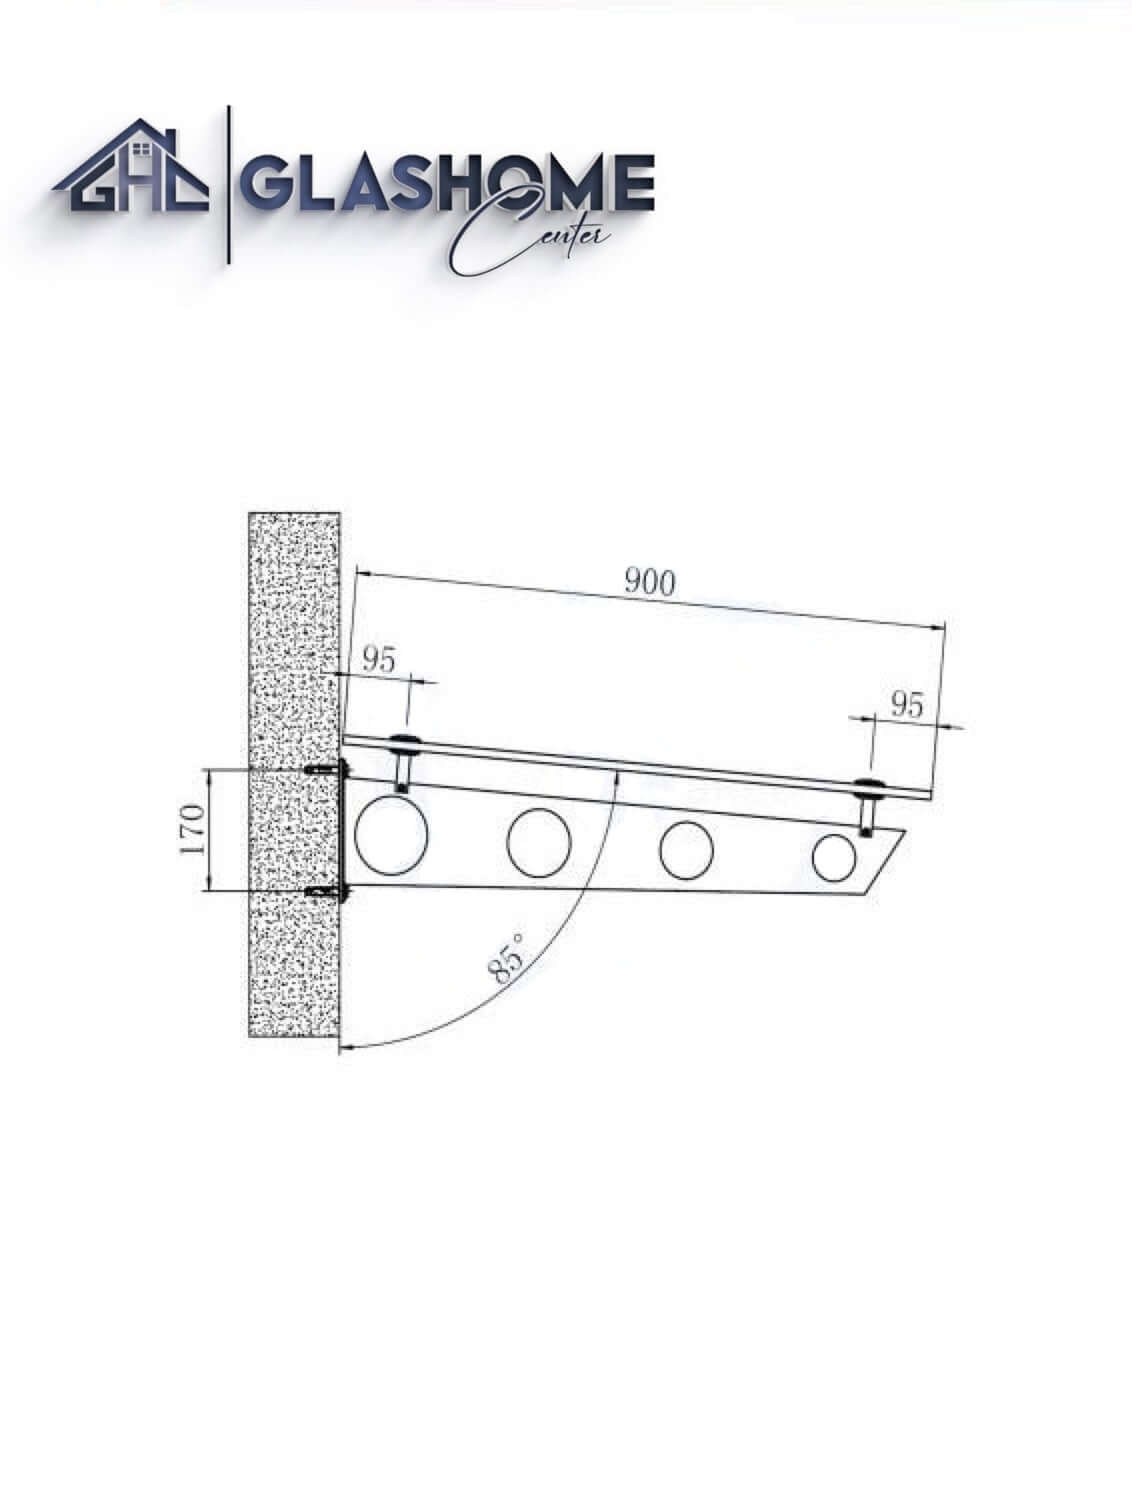 GlasHomeCenter - baldacchino in vetro - vetro trasparente - 200x90 cm - vetro di sicurezza stratificato 13,1 mm - incl.2 staffe in acciaio inossidabile nero variante "Stoccolma"